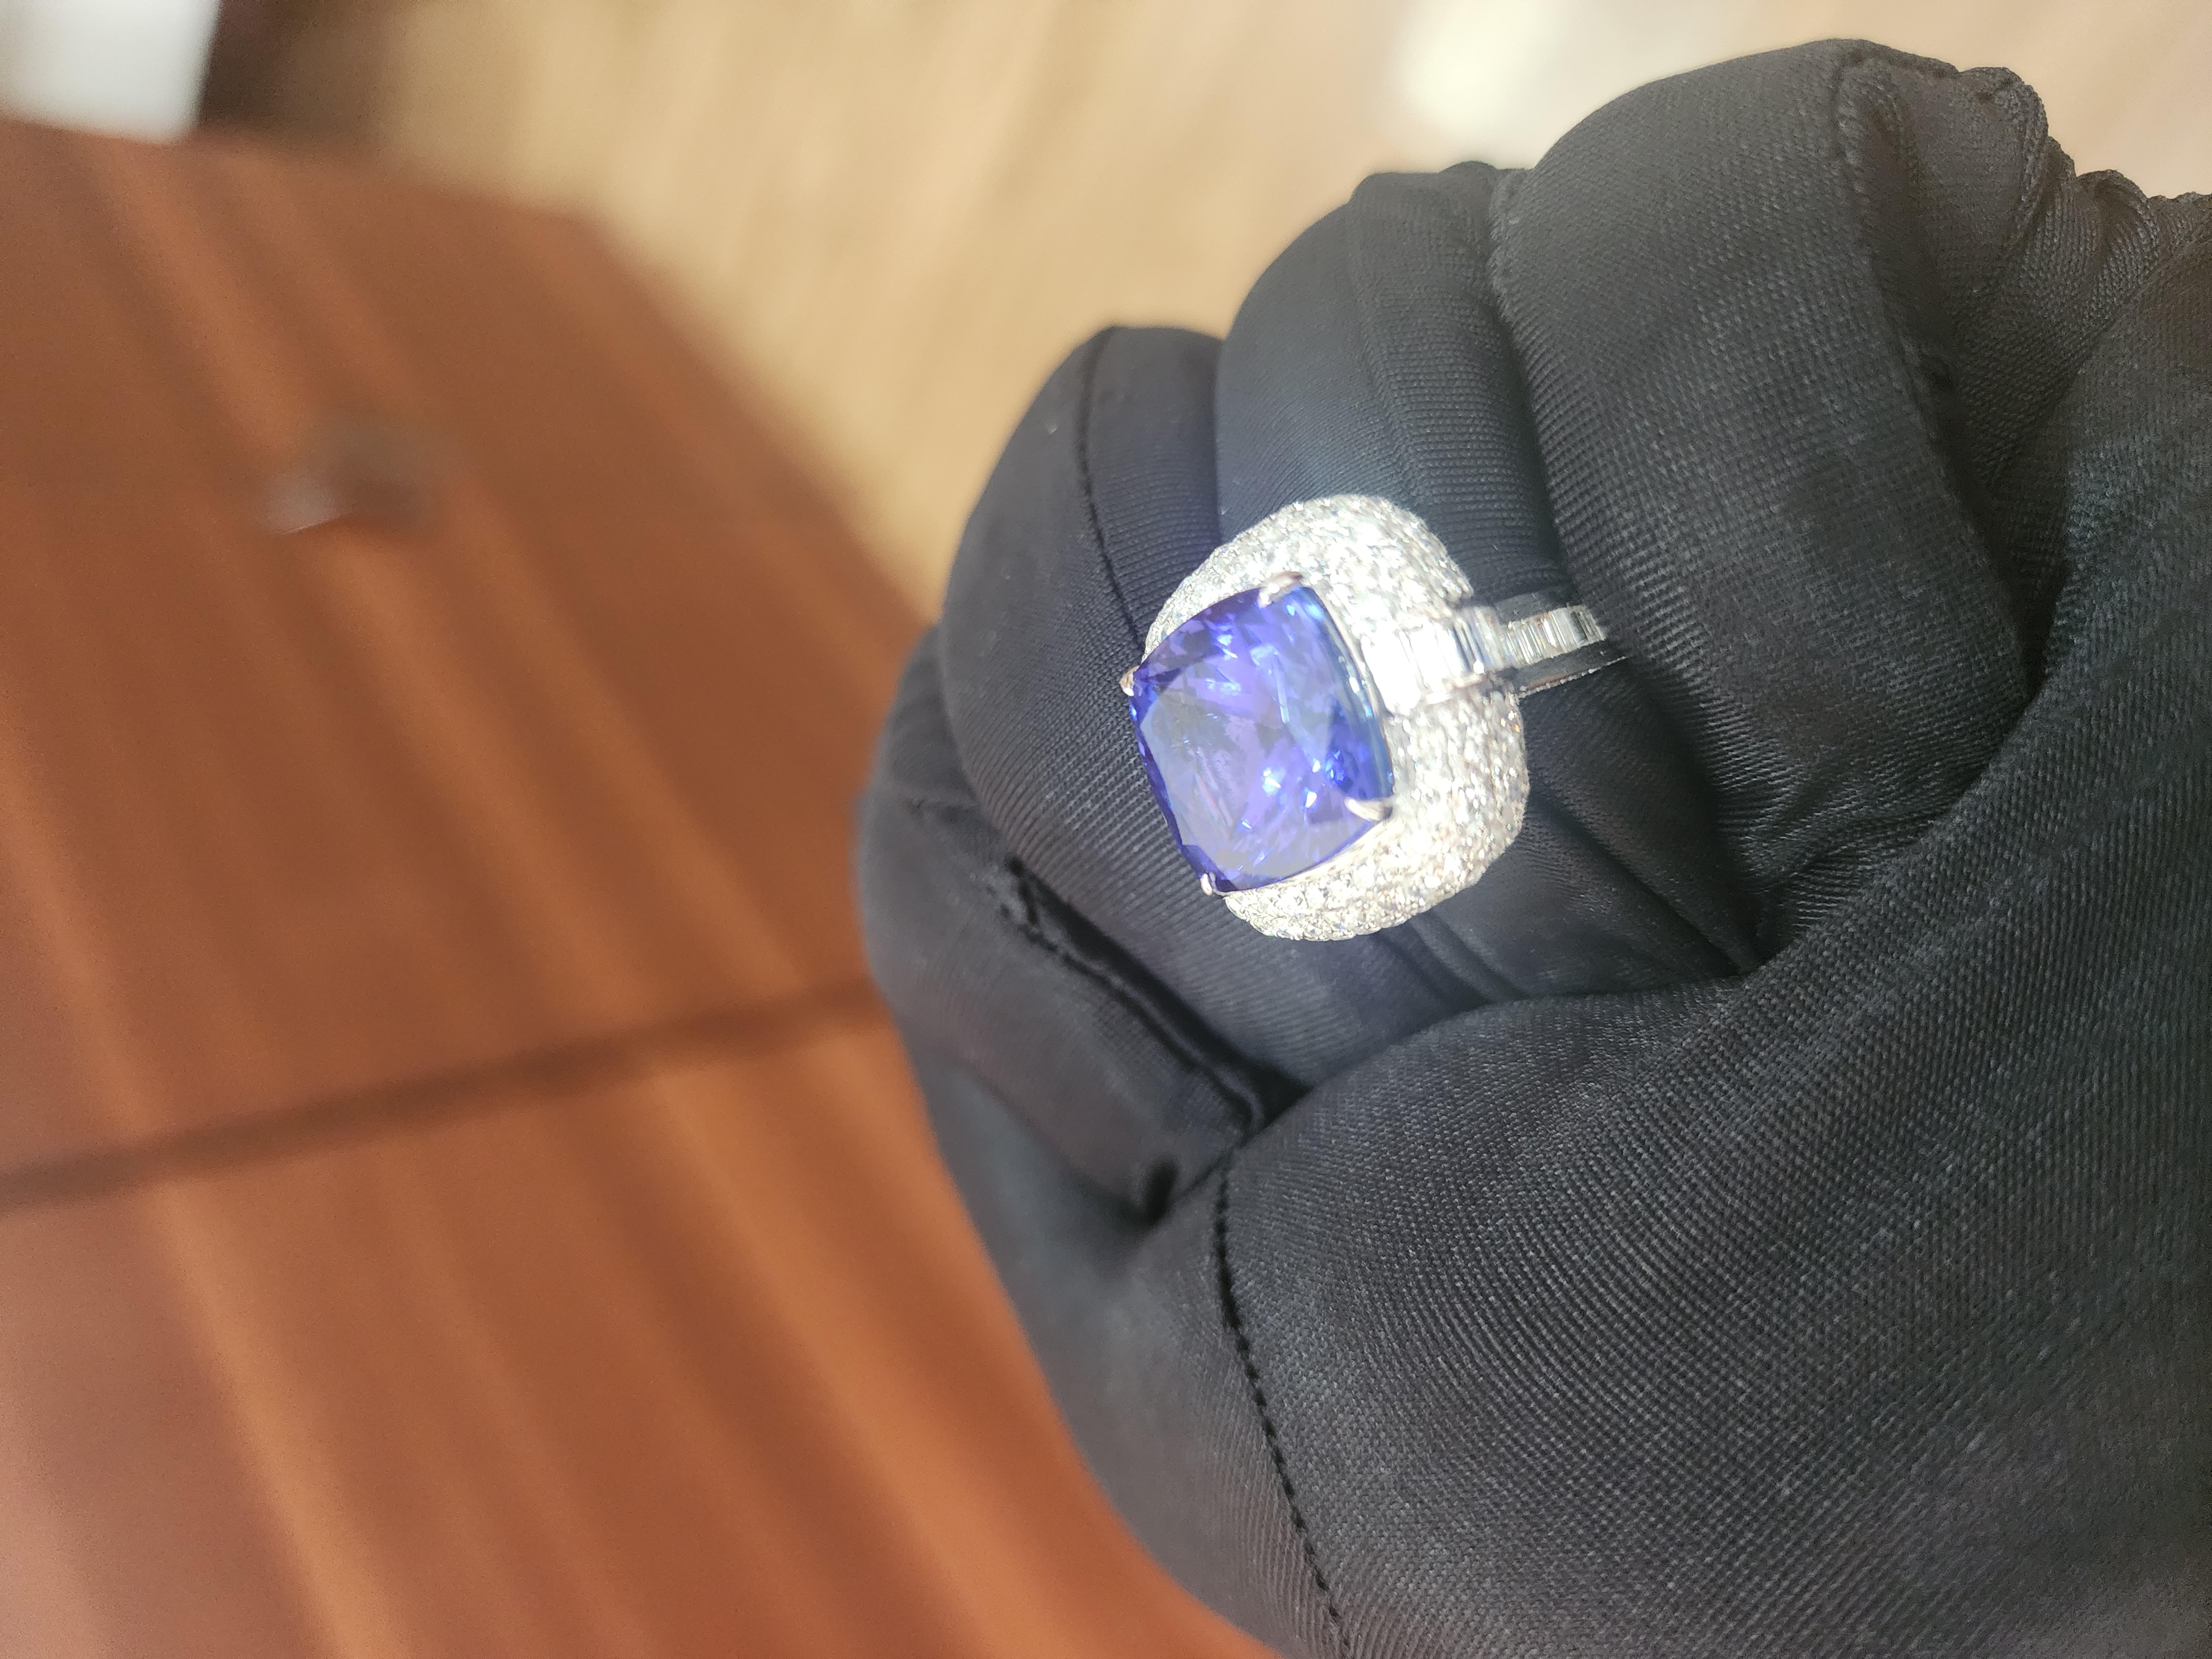 Dieser außergewöhnliche, riesige Tansanit von 13,27 Karat ist ein echter Edelstein, der sehr geschätzt wird. Er ist von insgesamt 3.4 Karat schimmernden weißen Diamanten umgeben, die die Schönheit und Eleganz des Schmuckstücks noch unterstreichen.